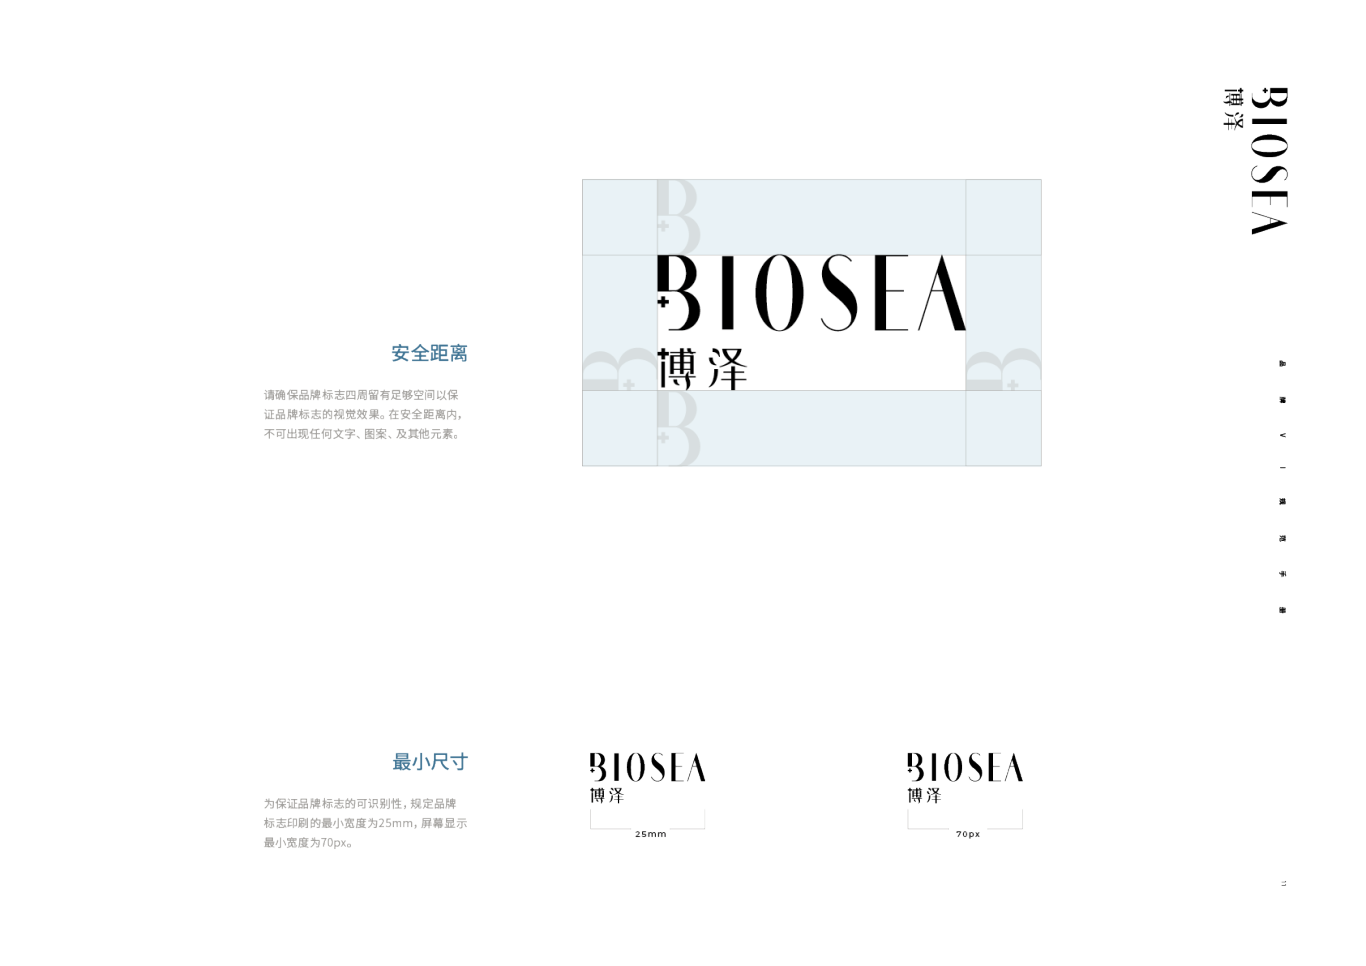 Biosea-博泽图10